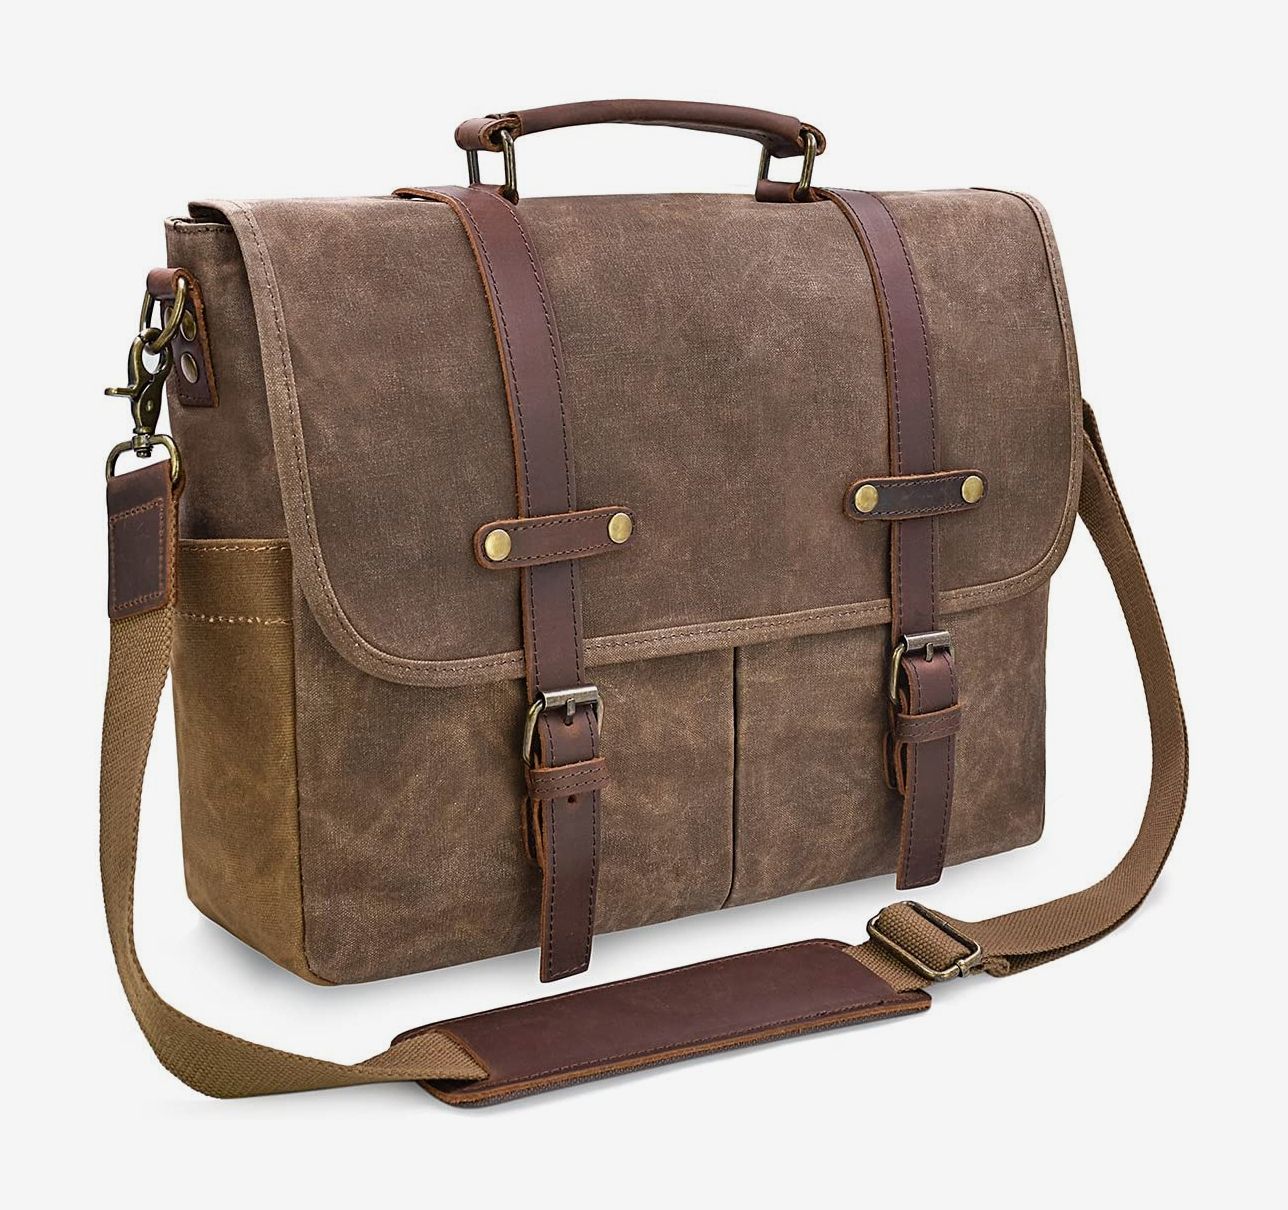 Men's Business Leather Briefcase Male Handbag Man Messenger Bags Shoulder Bag